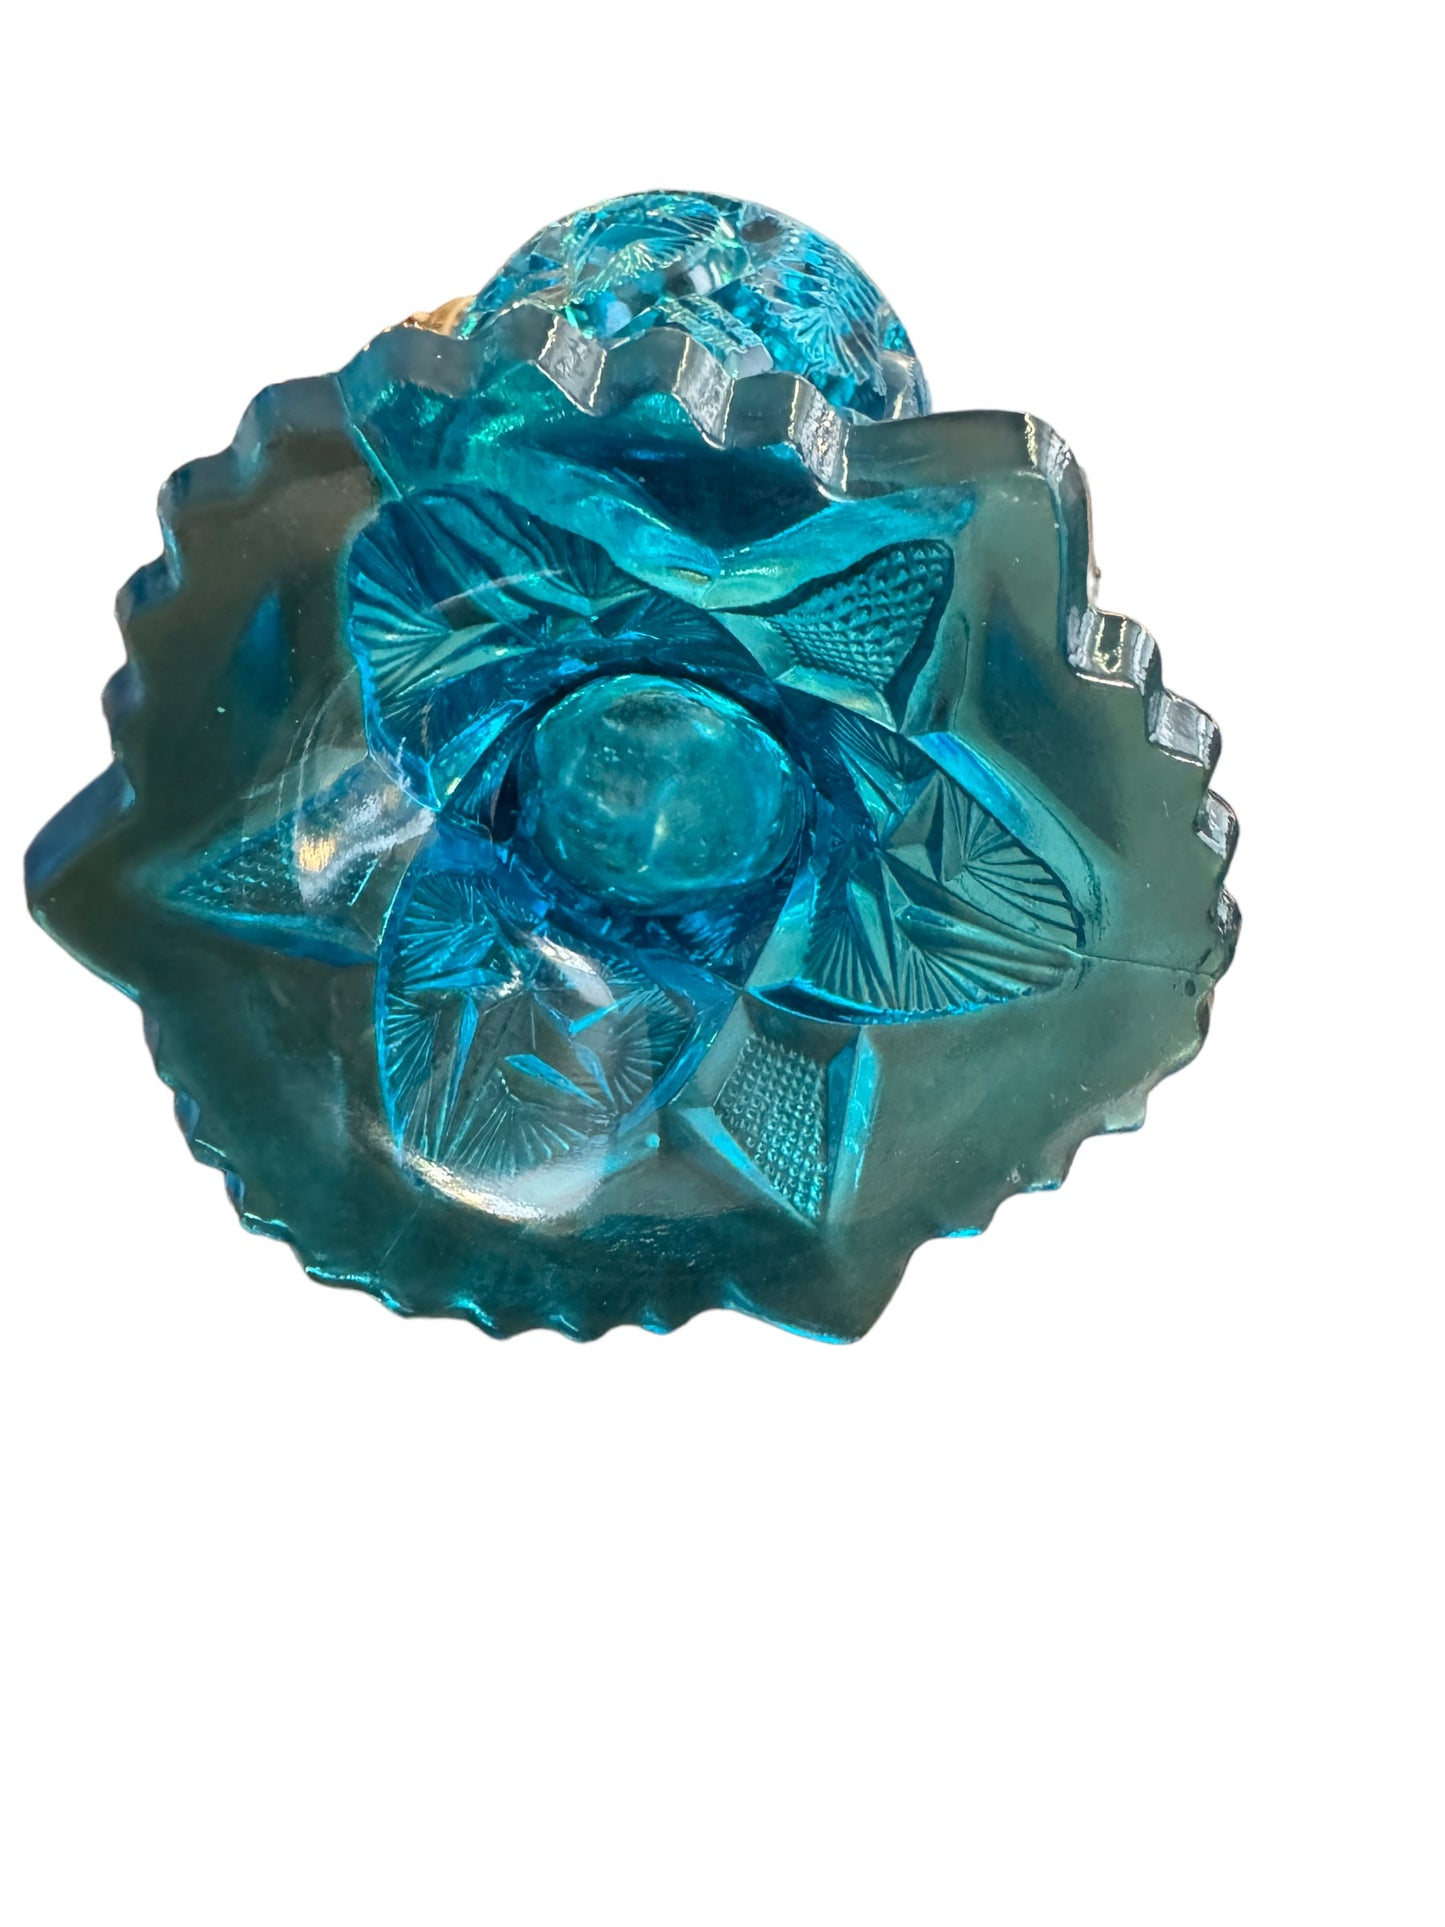 EAPG Blue Glass 9" Vase